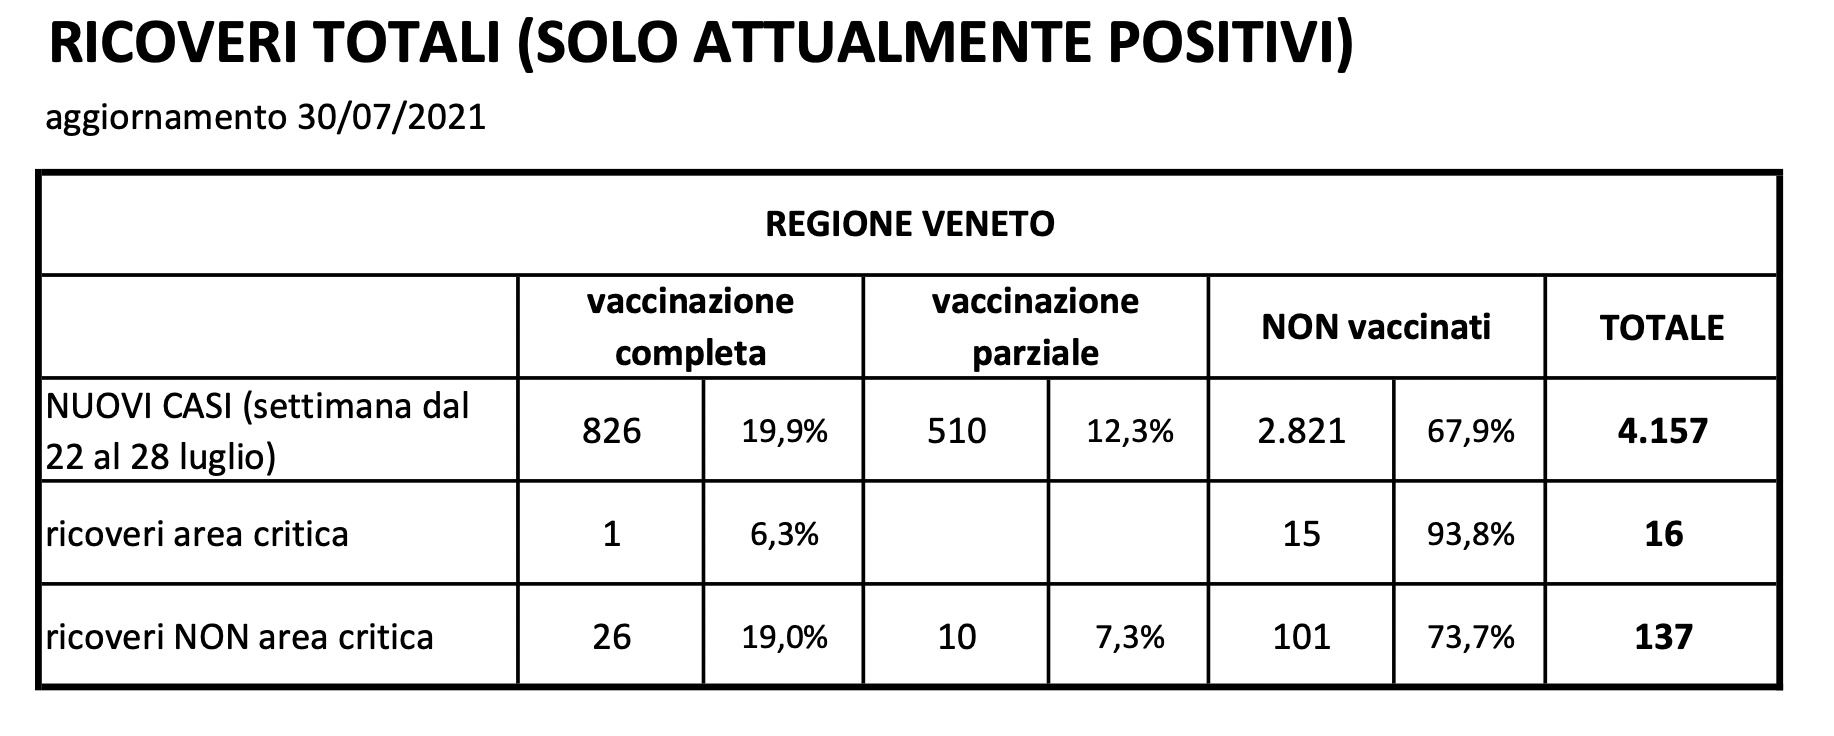 Ricoveri totali in Veneto (solo attualmente positivi), aggiornamento 30:07:2021